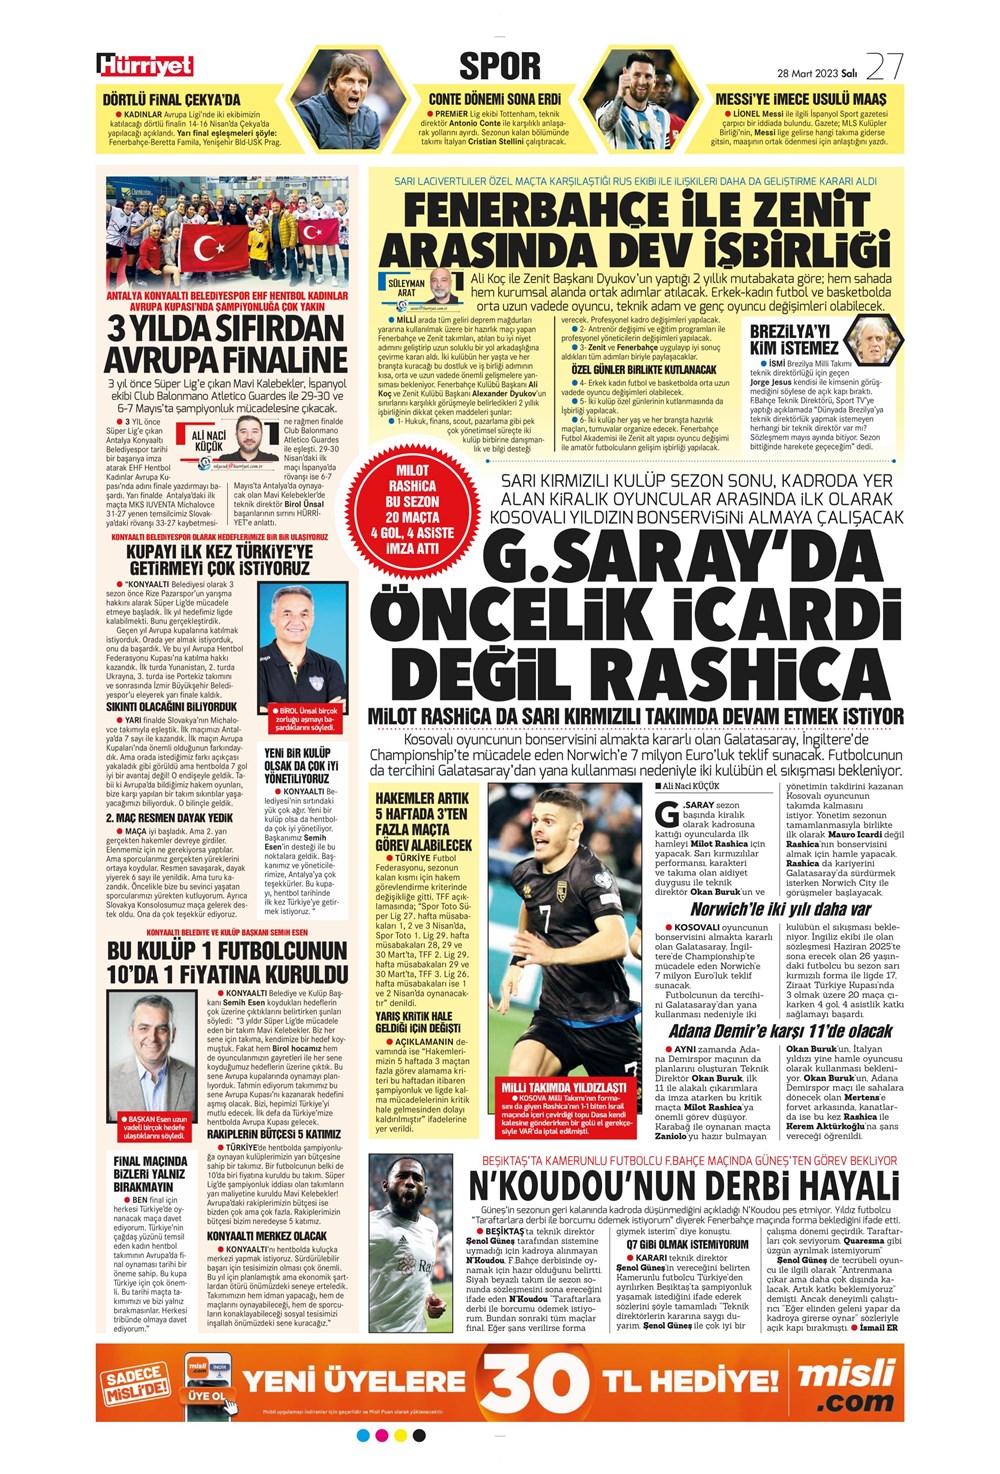 "Vurduğumuz gol olsun" - Sporun manşetleri - 21. Foto